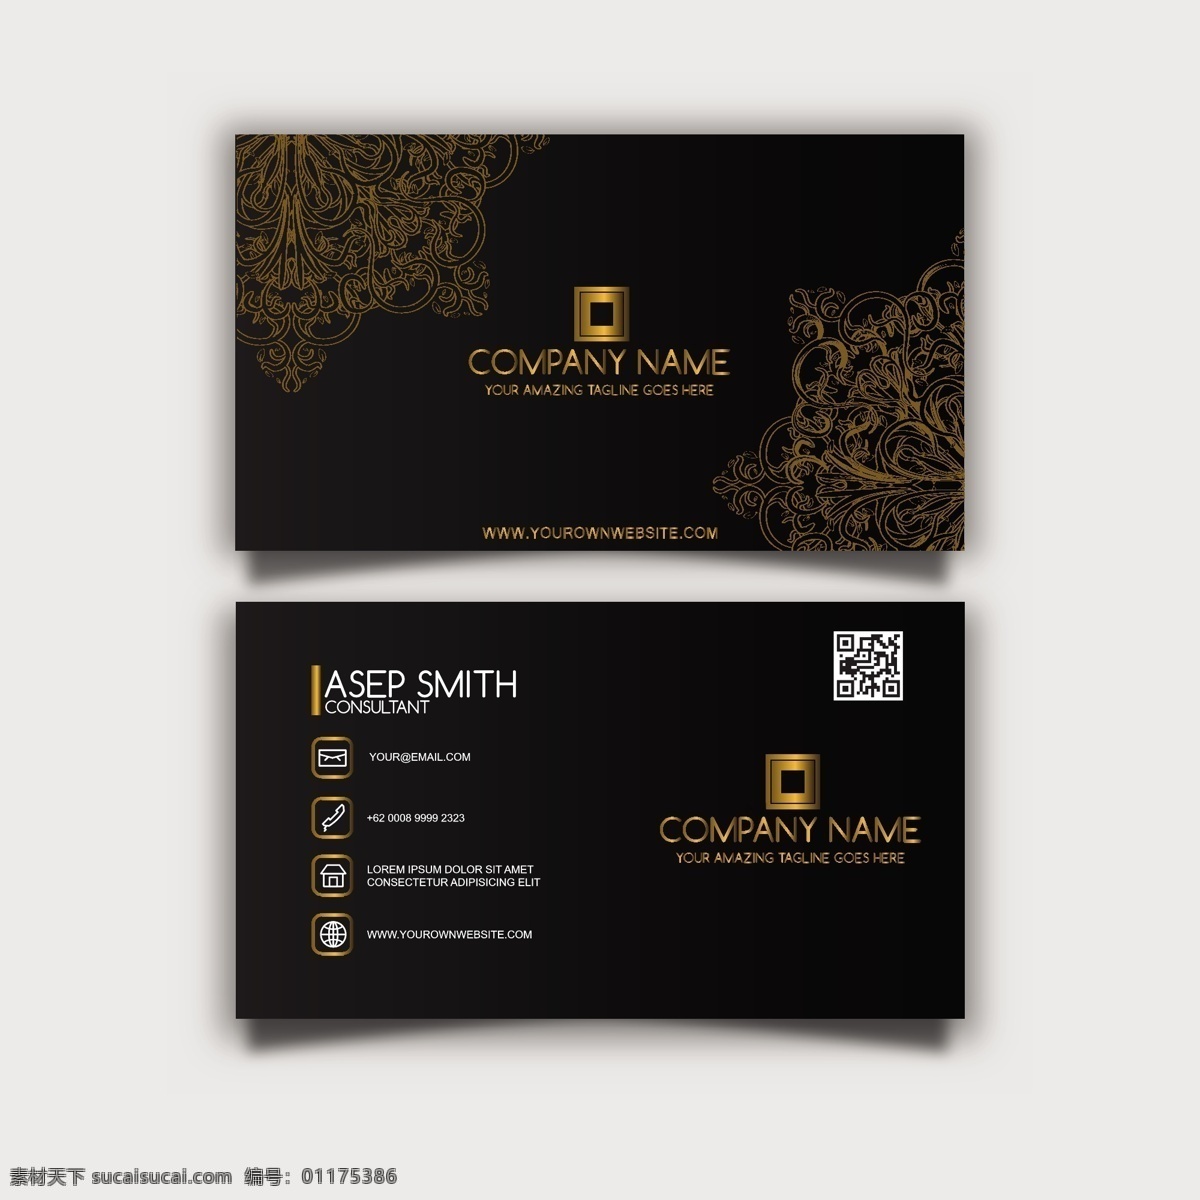 黑白名片 商标 名片 商务 黄金 抽象 卡片 模板 办公室 黑色 展示 文具 公司 抽象标志 企业标识 品牌 现代 身份